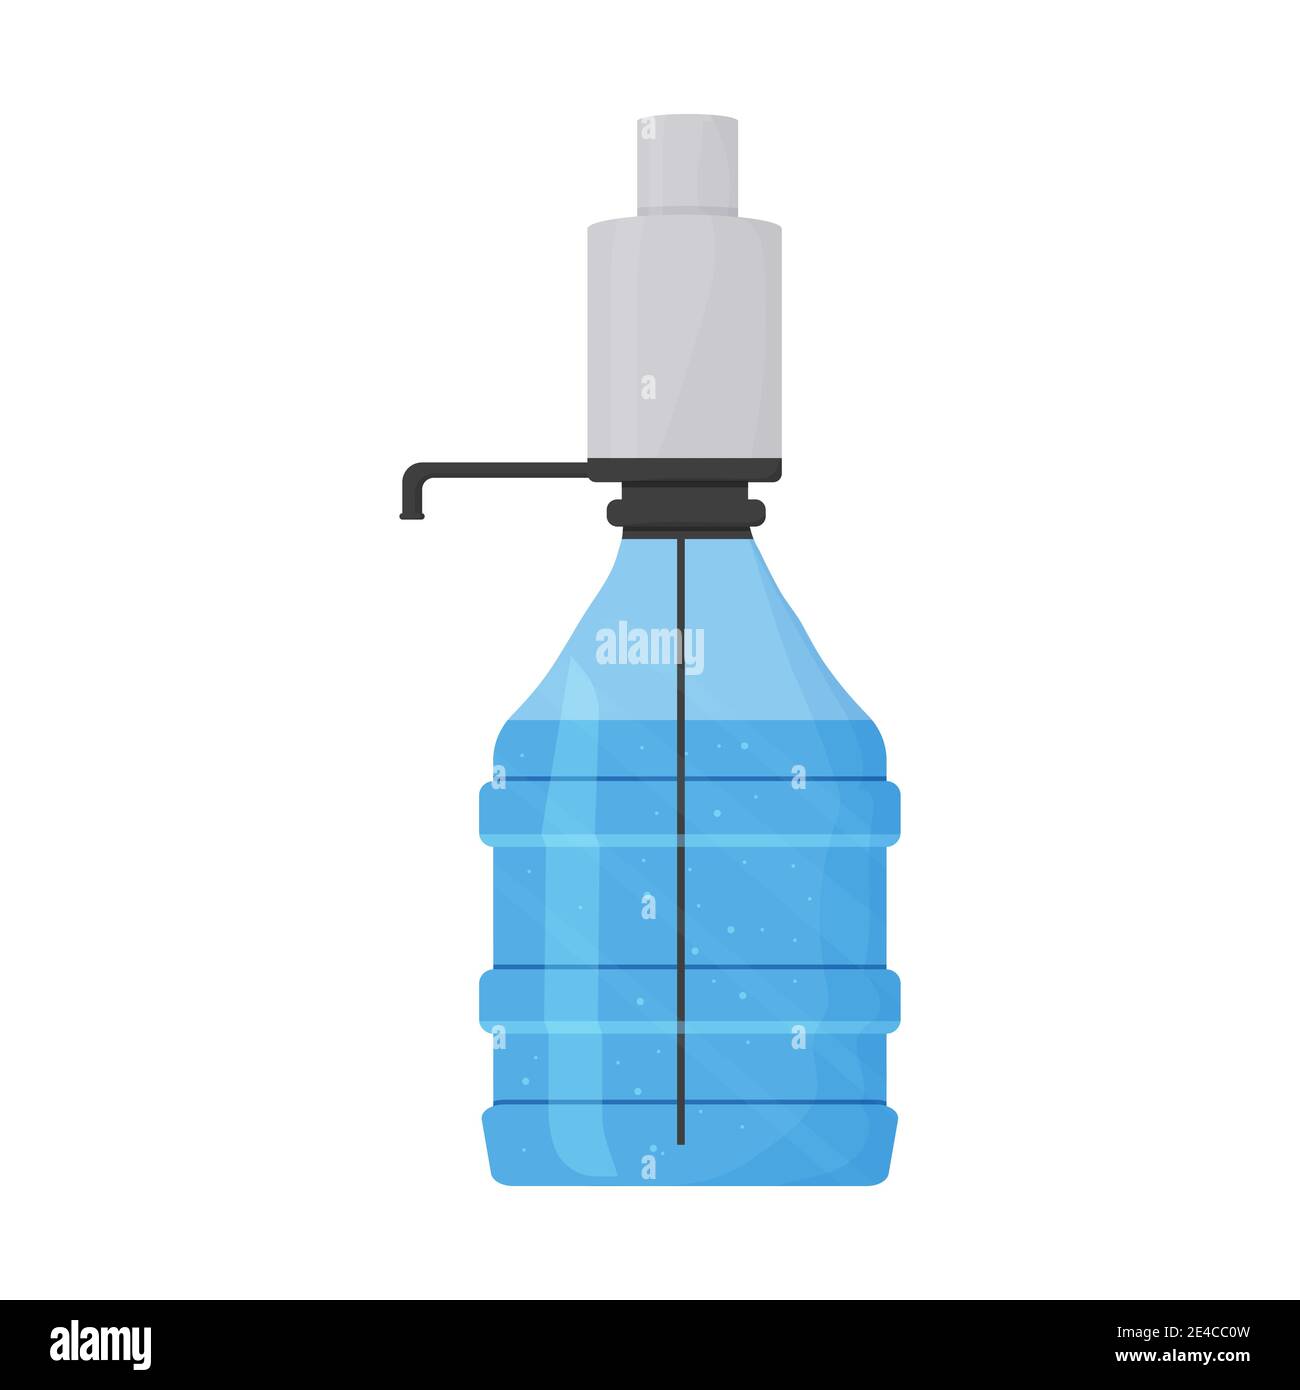 Vorratstank, Kunststoffflasche für gefiltertes Wasser isoliert auf weißem Hintergrund. Tragbare Geräte, Reinigungskonzept. Vektorgrafik Stock Vektor